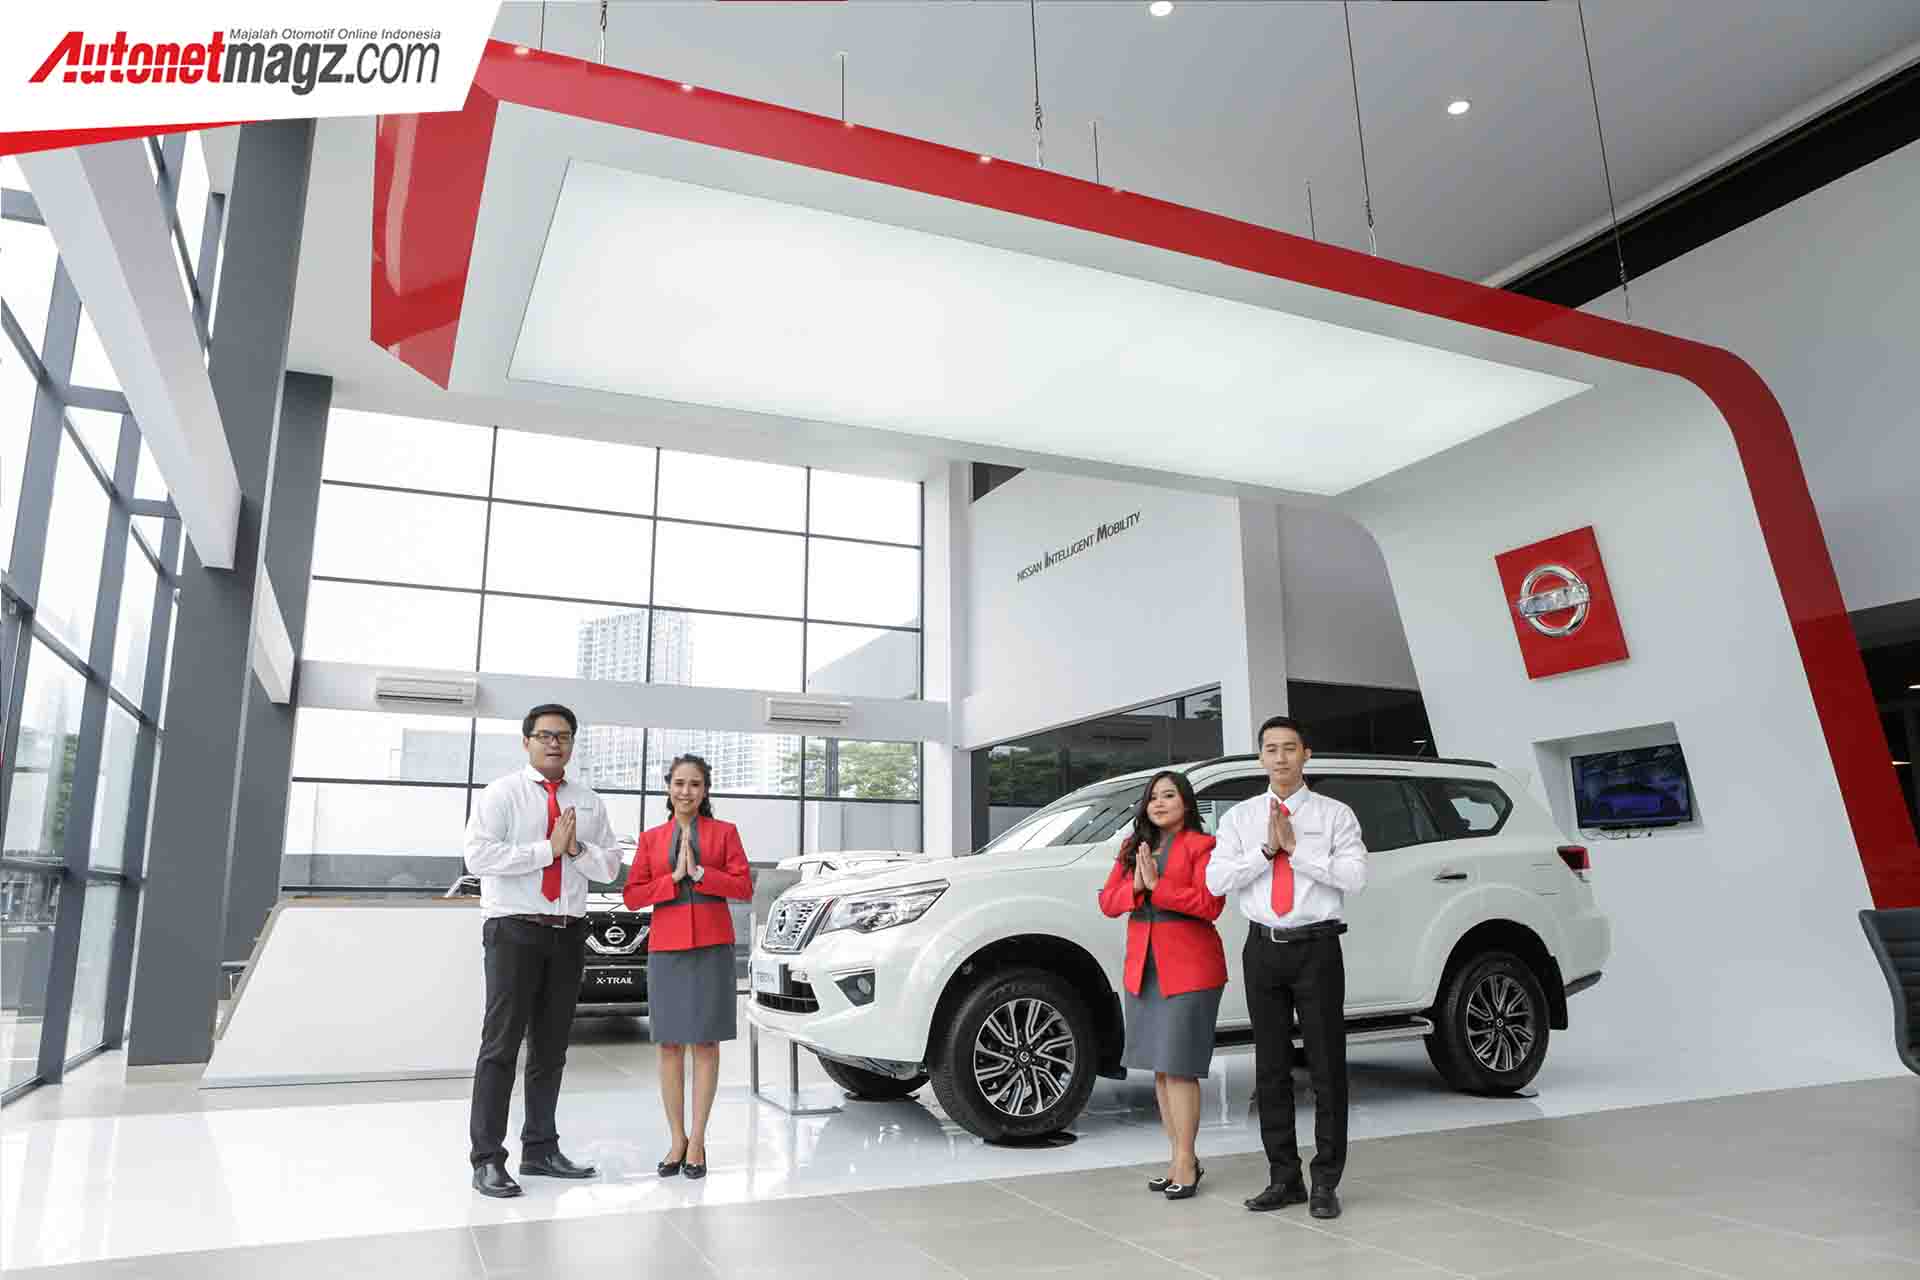 Berita, Peresmian Diler Nissan Datsun: Nissan Global Retail Concept Diterapkan di Diler Baru Alam Sutera